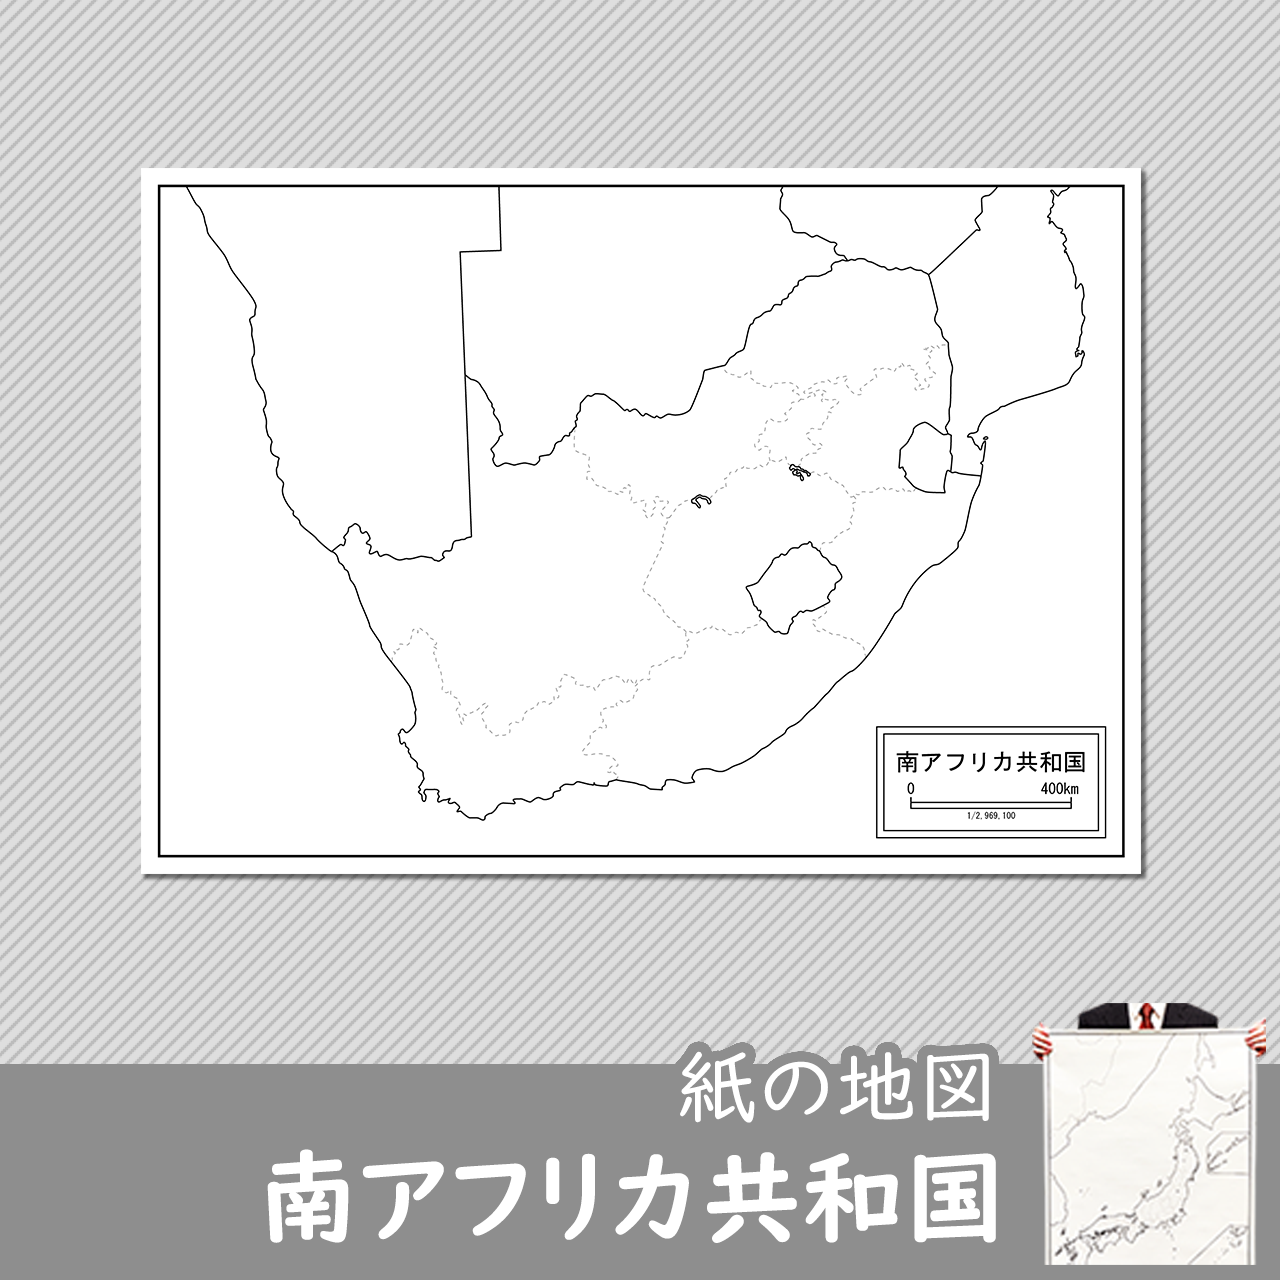 南アフリカ共和国の紙の白地図のサムネイル